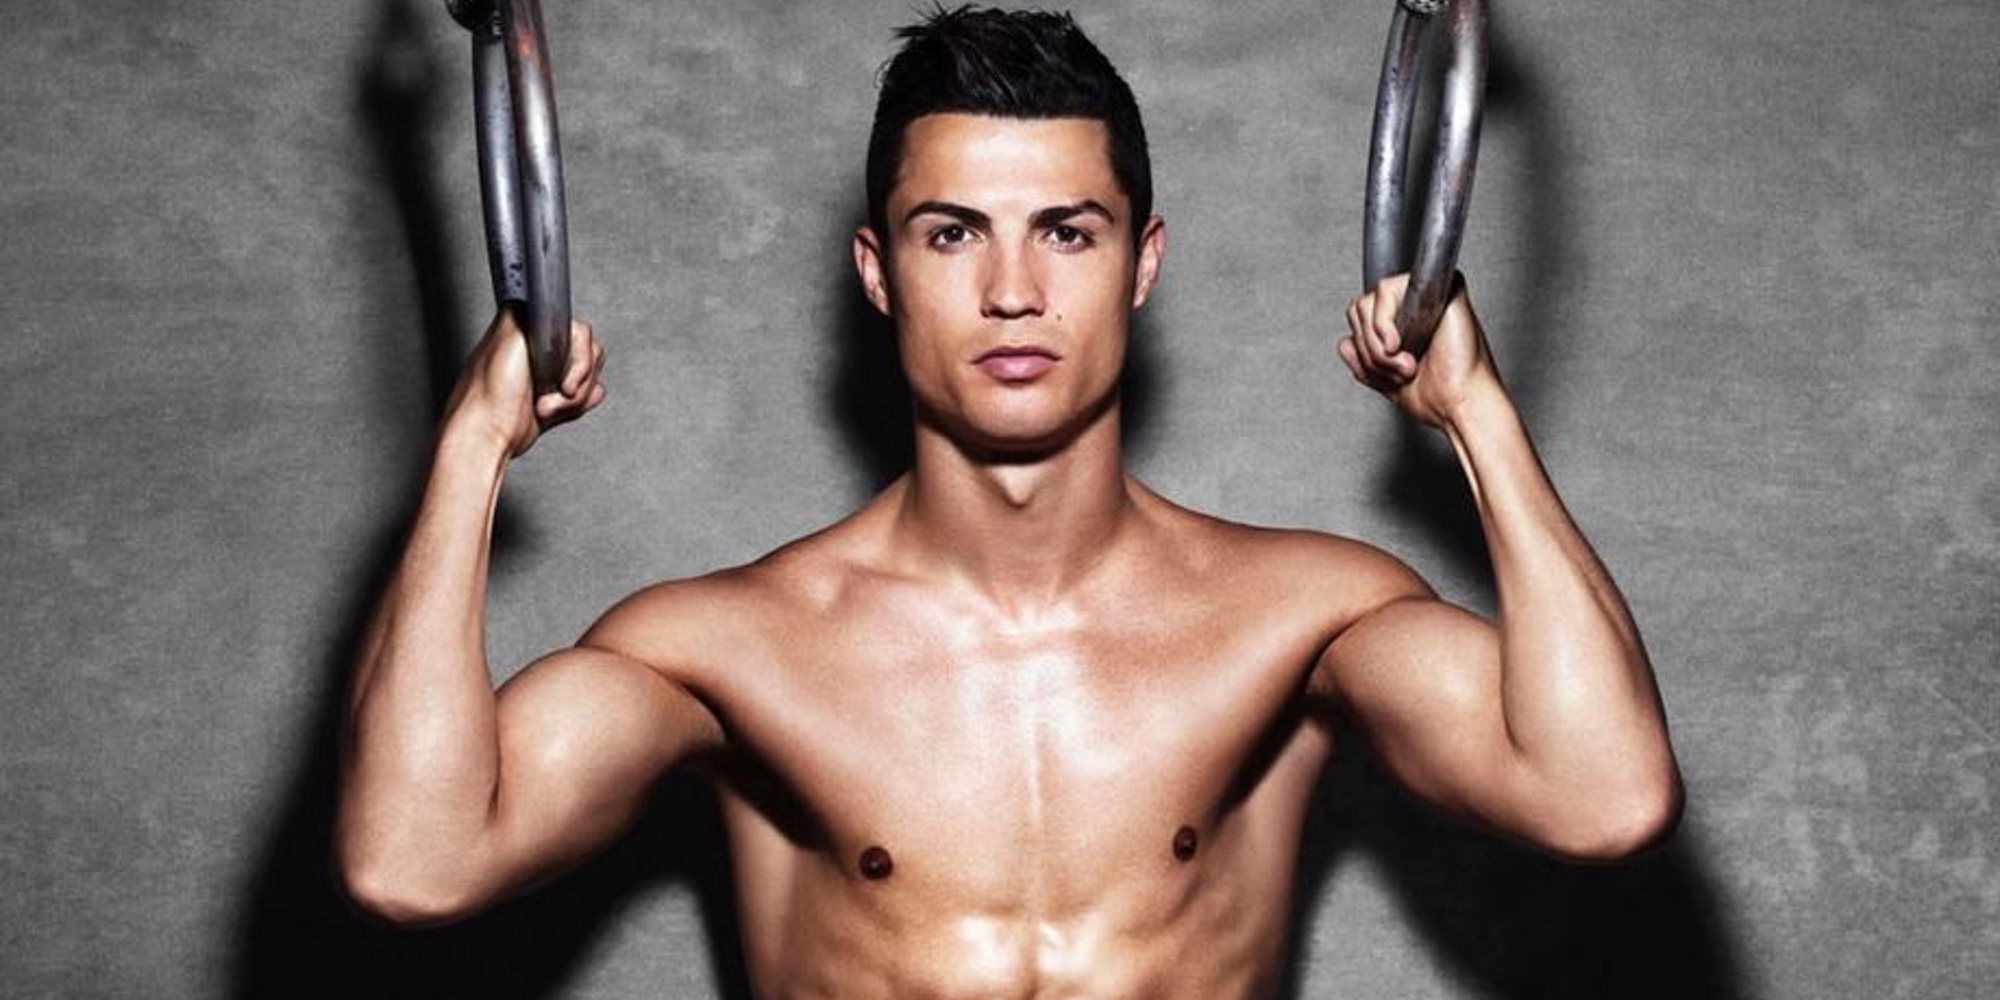 La policía de las Vegas reclama el ADN de Cristiano Ronaldo por una supuesta violación